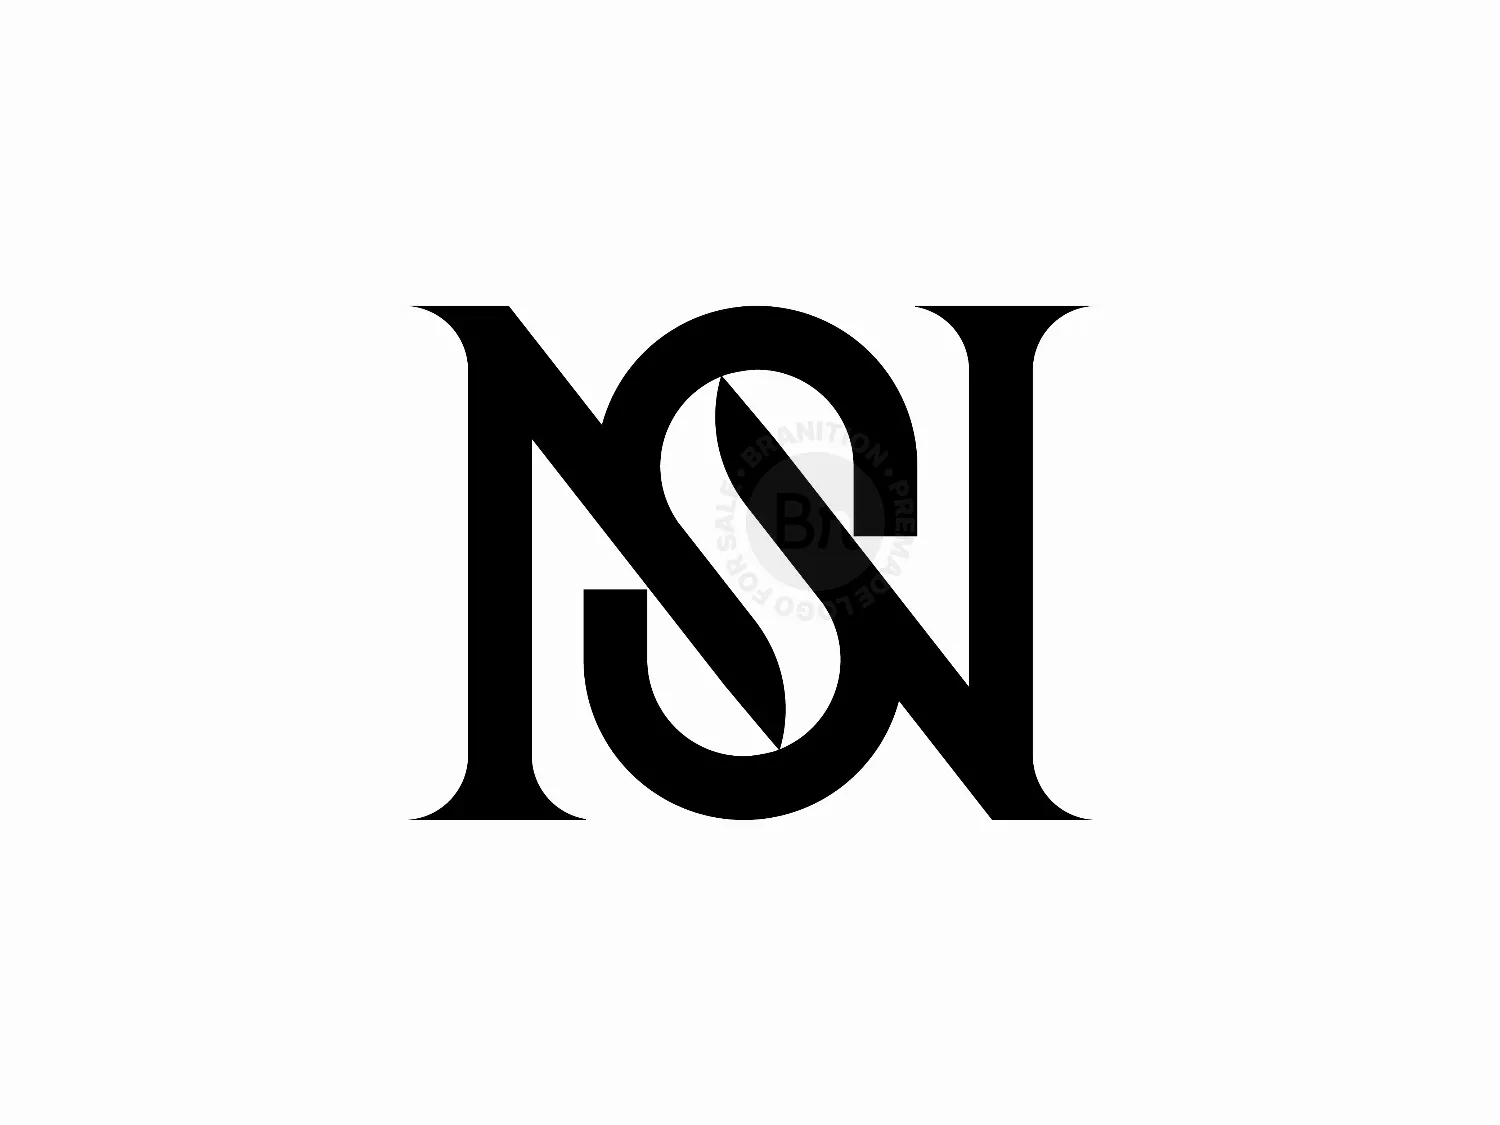 SN Monogram Logo